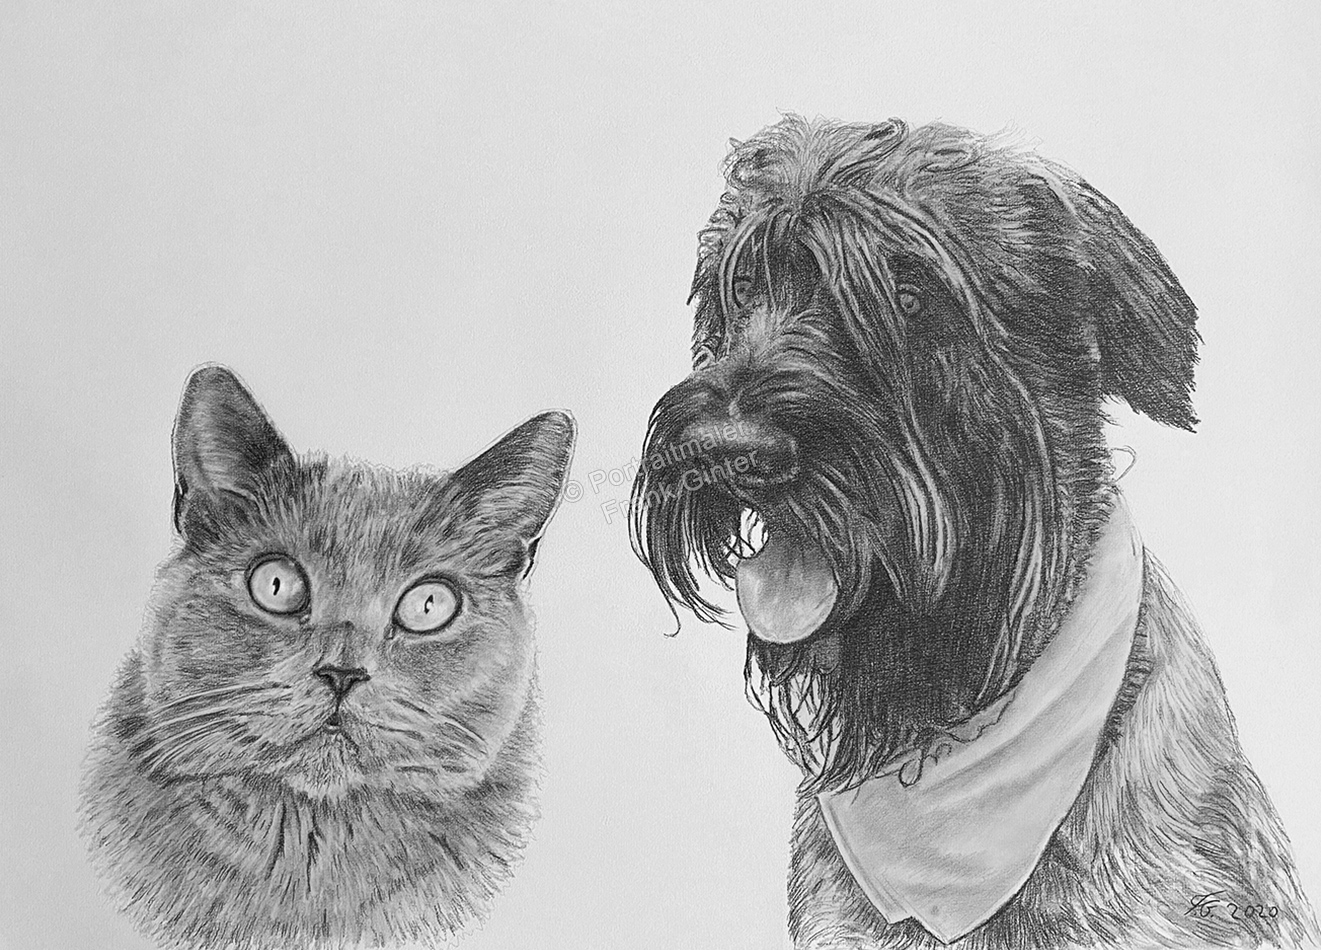 Bleistiftzeichnungen, Katzenzeichnung zusammen mit einem Hund gezeichnet